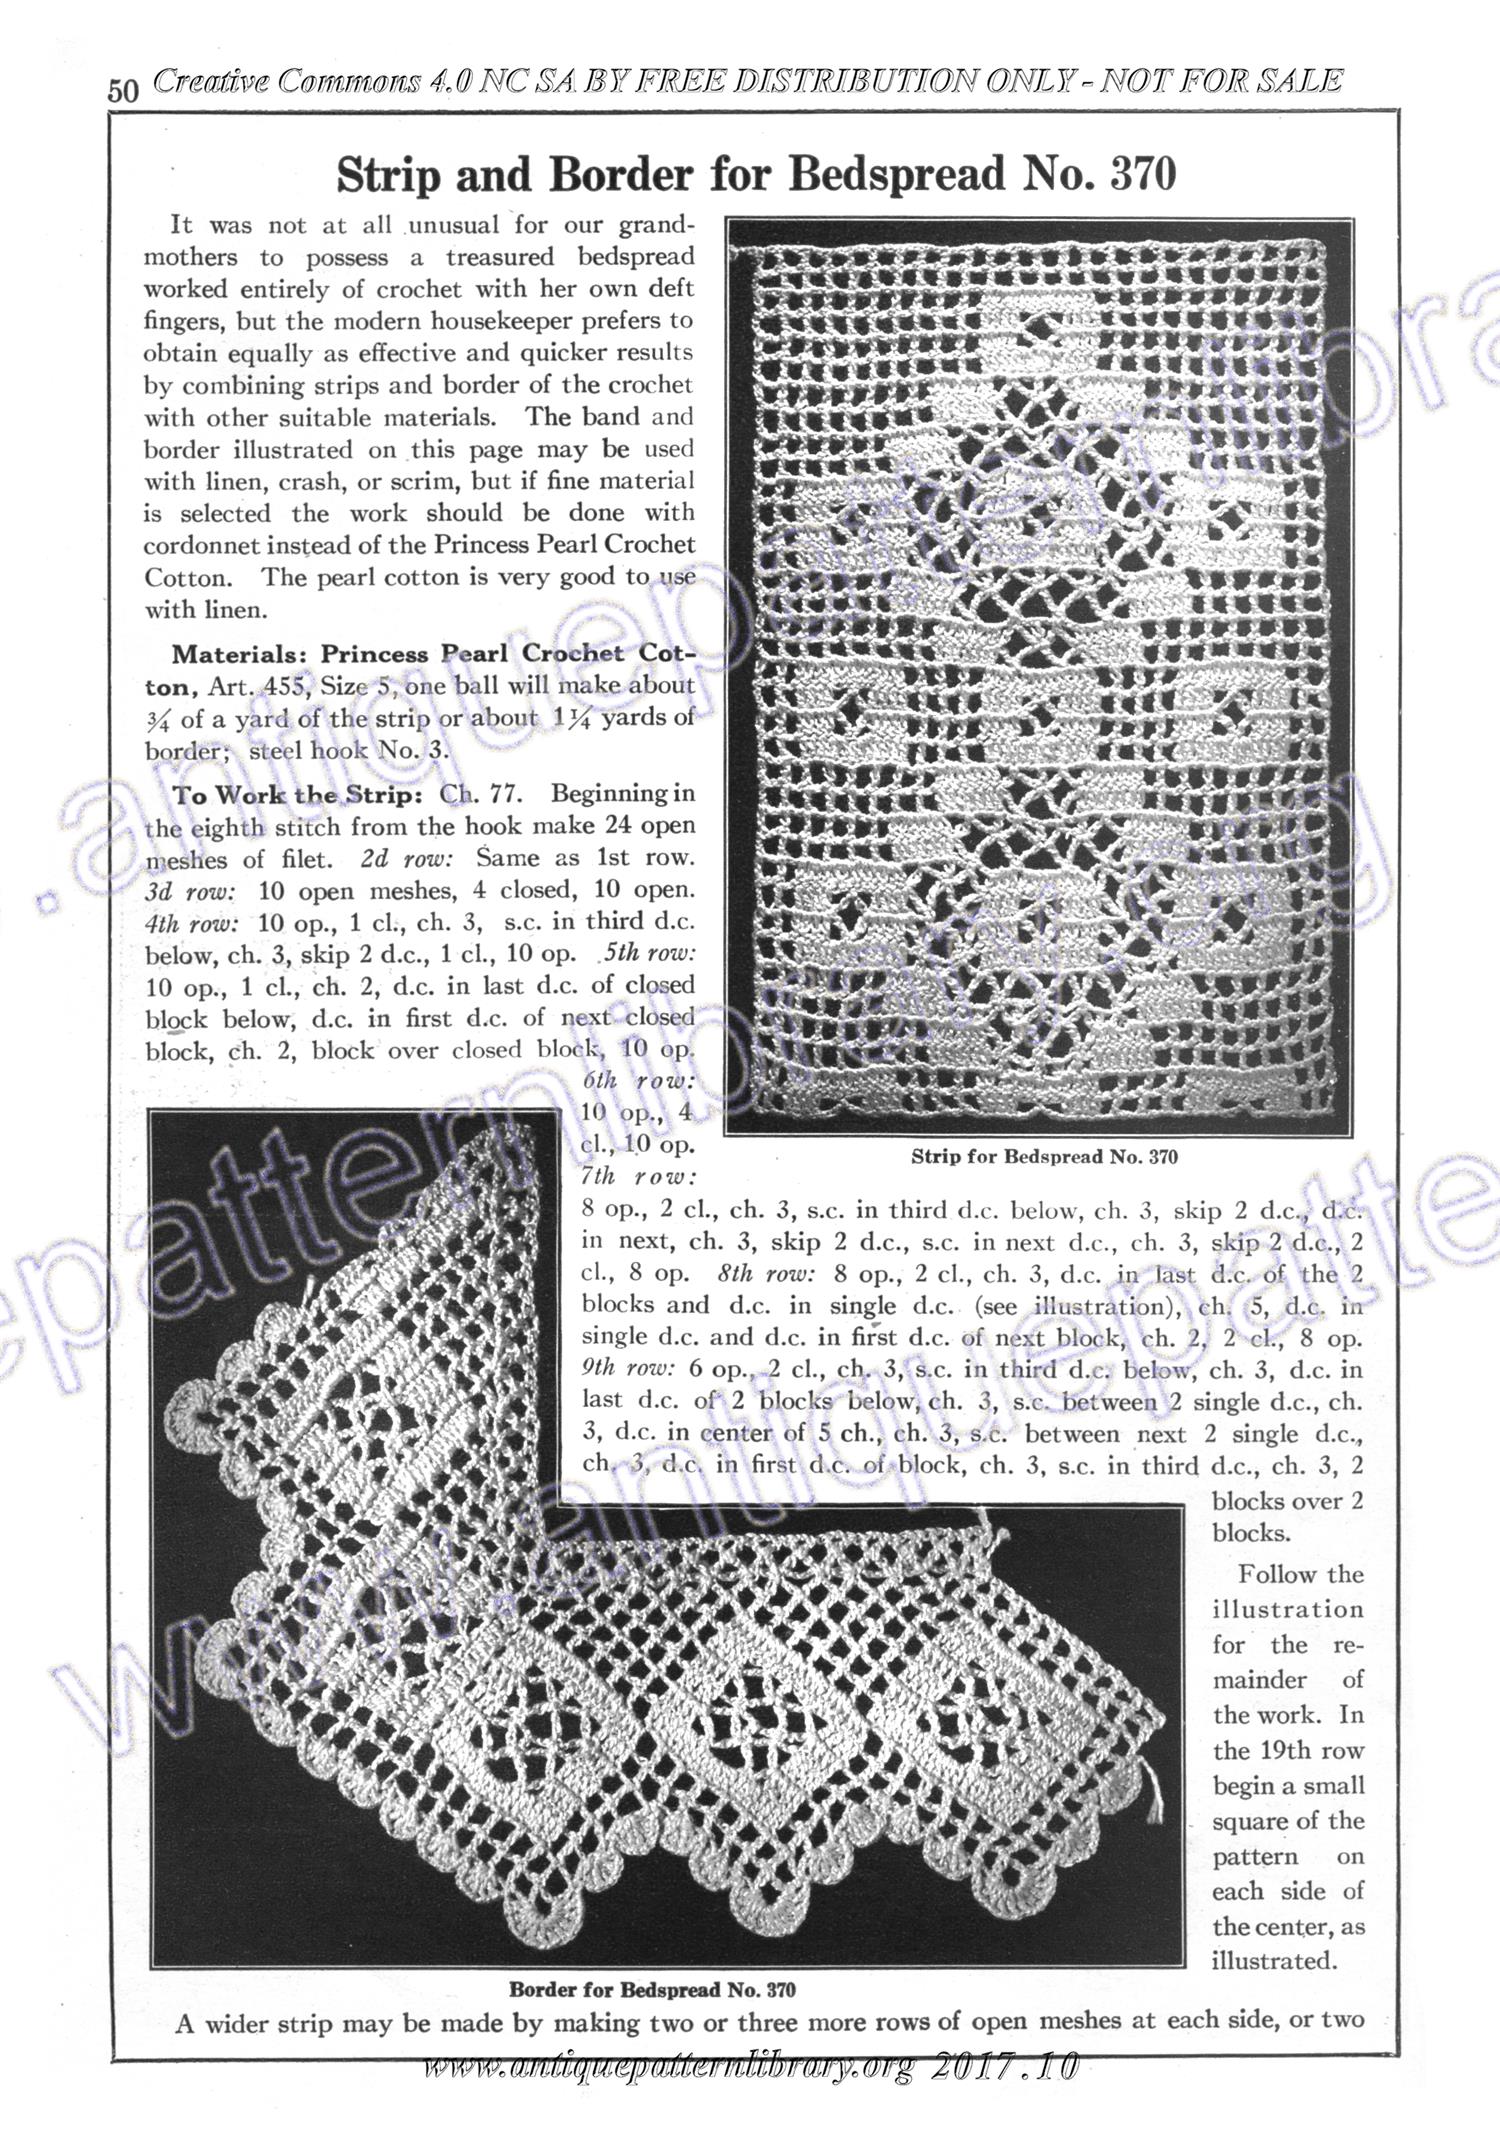 6-JA023 Lessons in Crochet